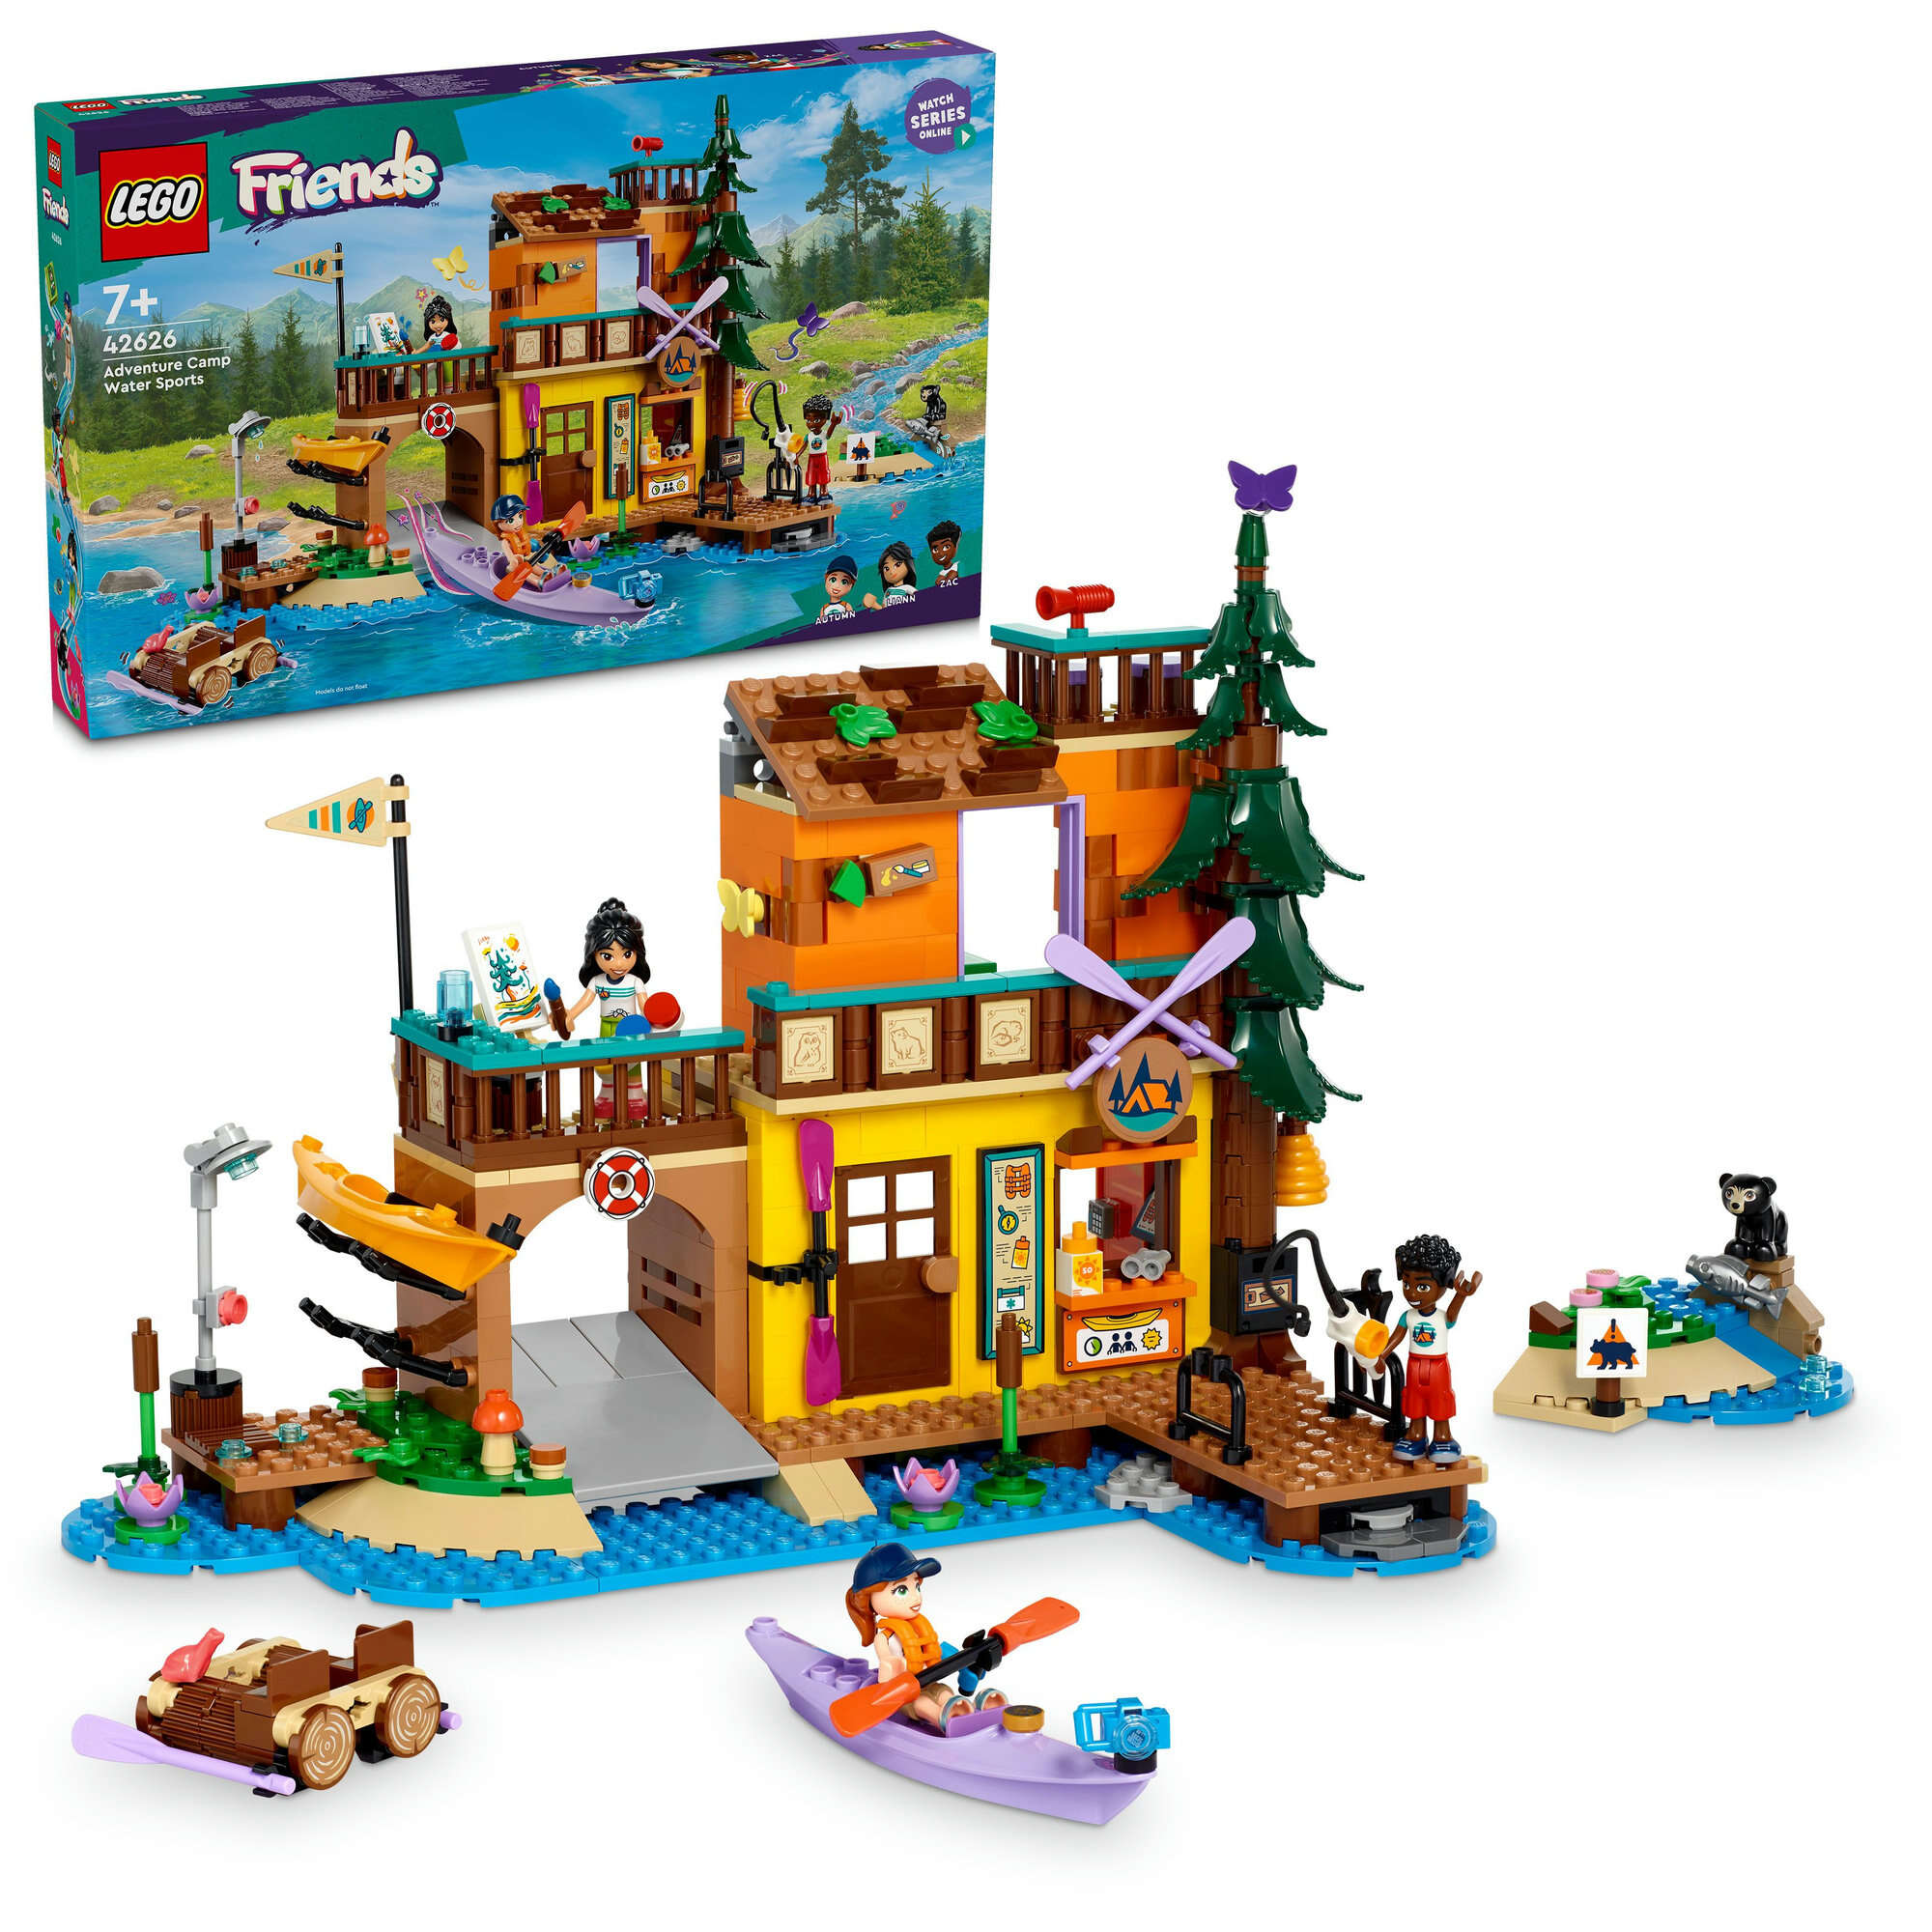 LEGO 42626 Friends Abenteuercamp mit Kayak, 3 Spielfiguren, Bär, viel Zubehör